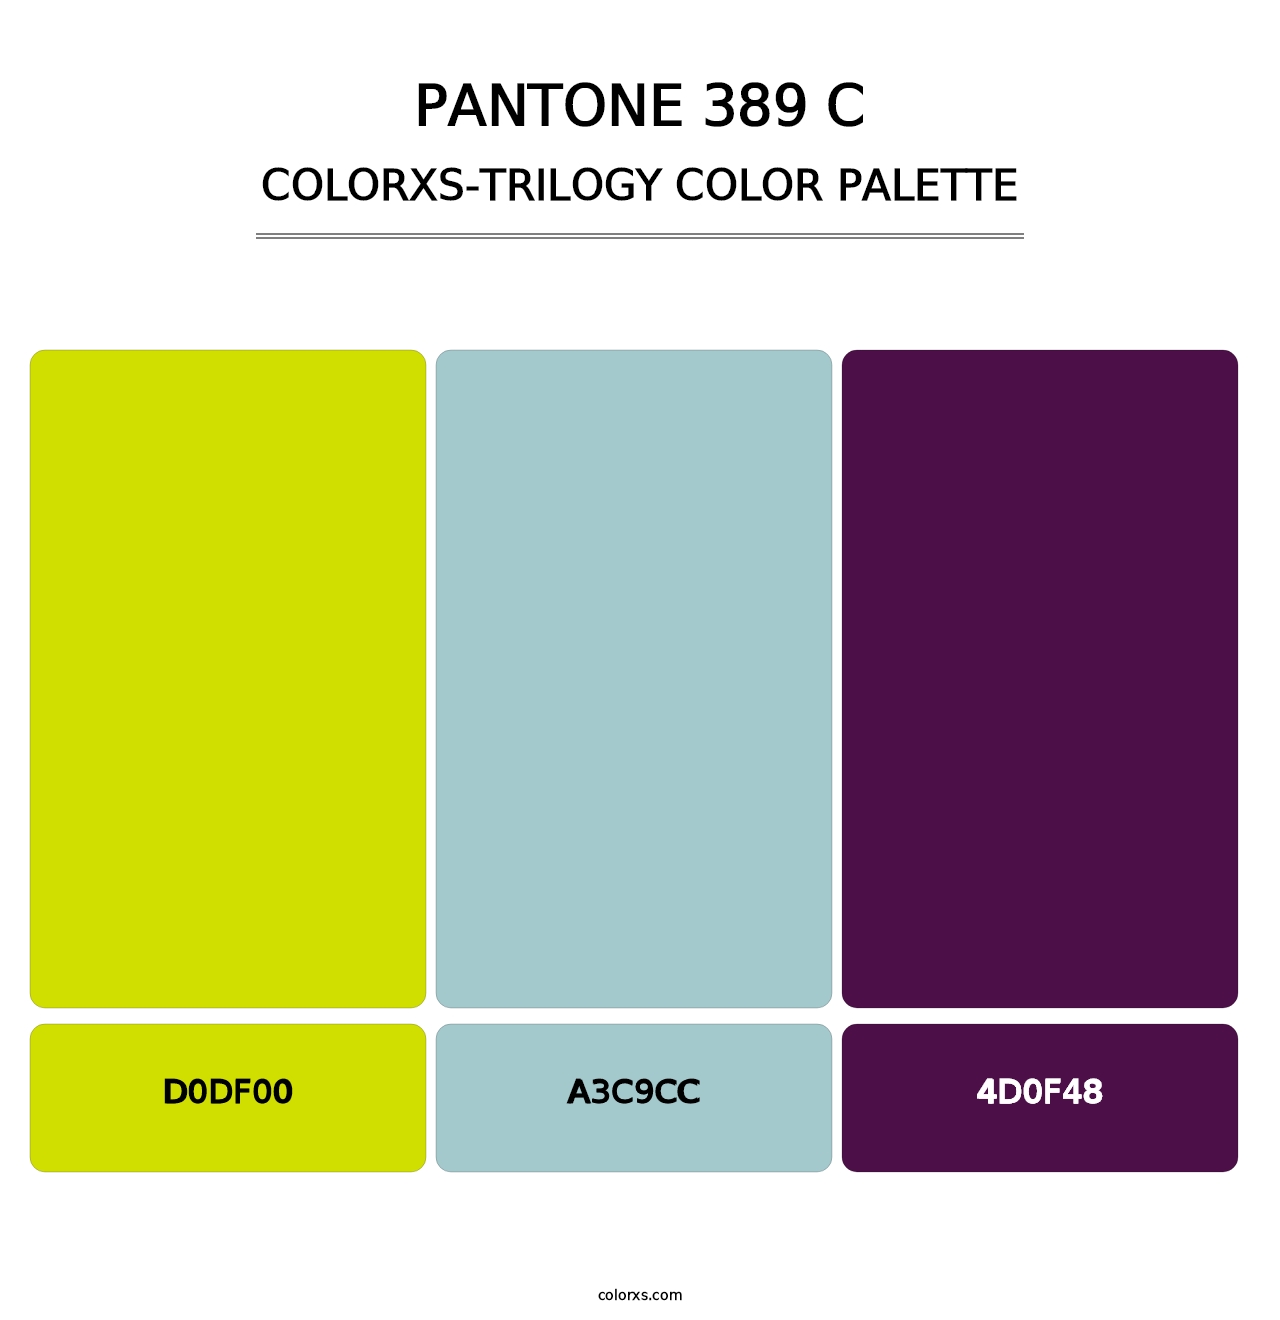 PANTONE 389 C - Colorxs Trilogy Palette